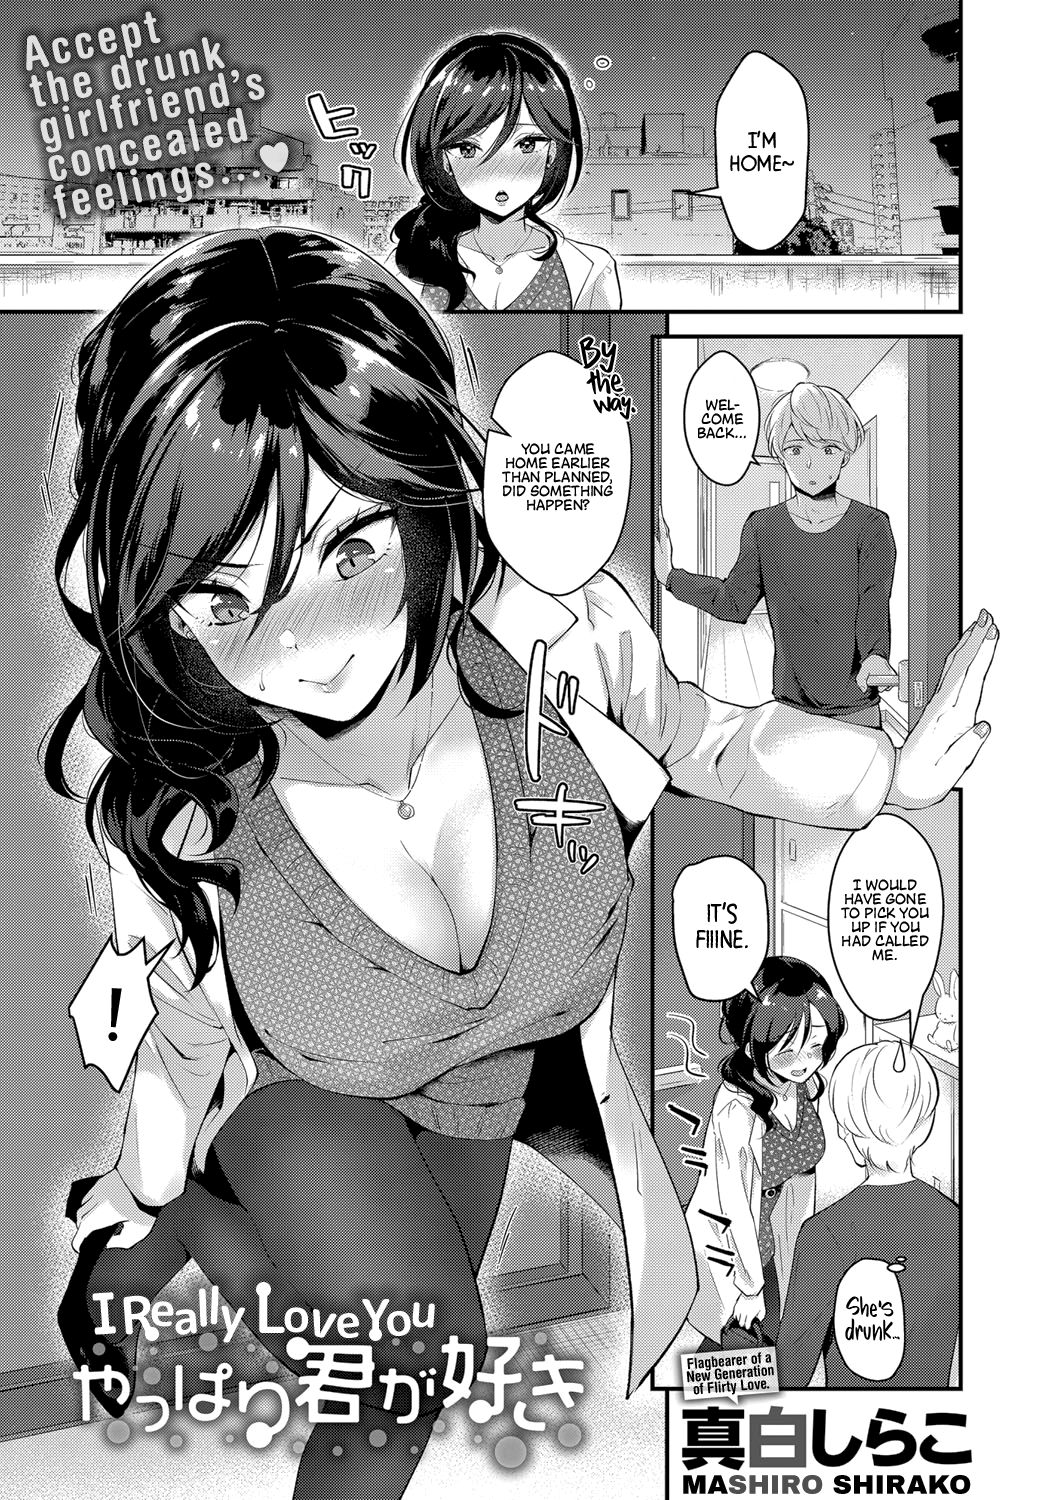 Manga hentai comics porno